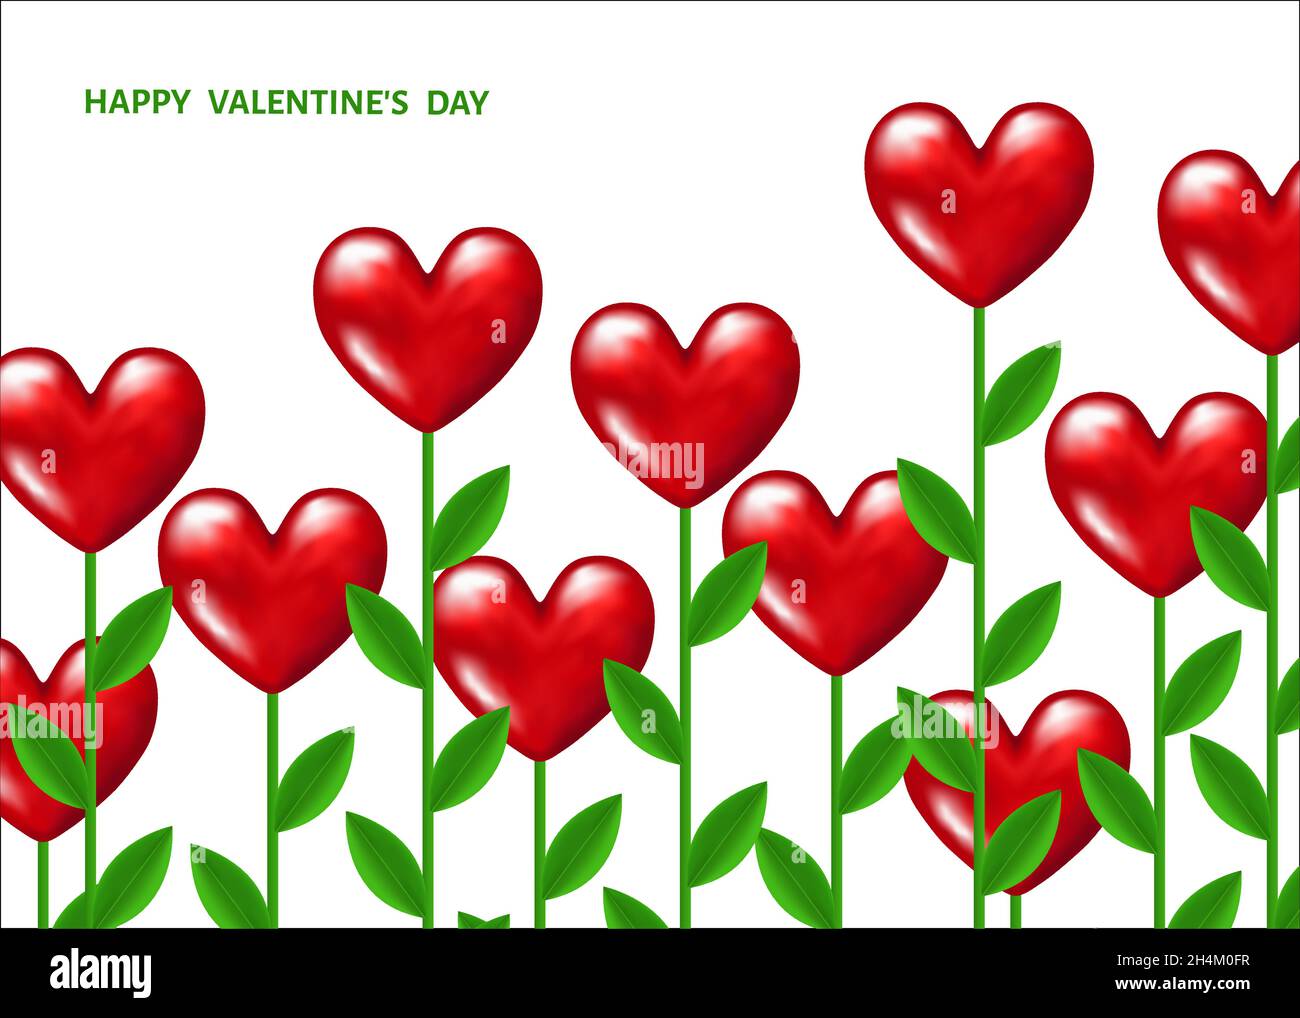 Valentinskarte mit roten realistischen Blüten in Herzform mit grünen Stielen und Blättern auf weißem Hintergrund. Liebe. Unkrautverzierung. Stock Vektor